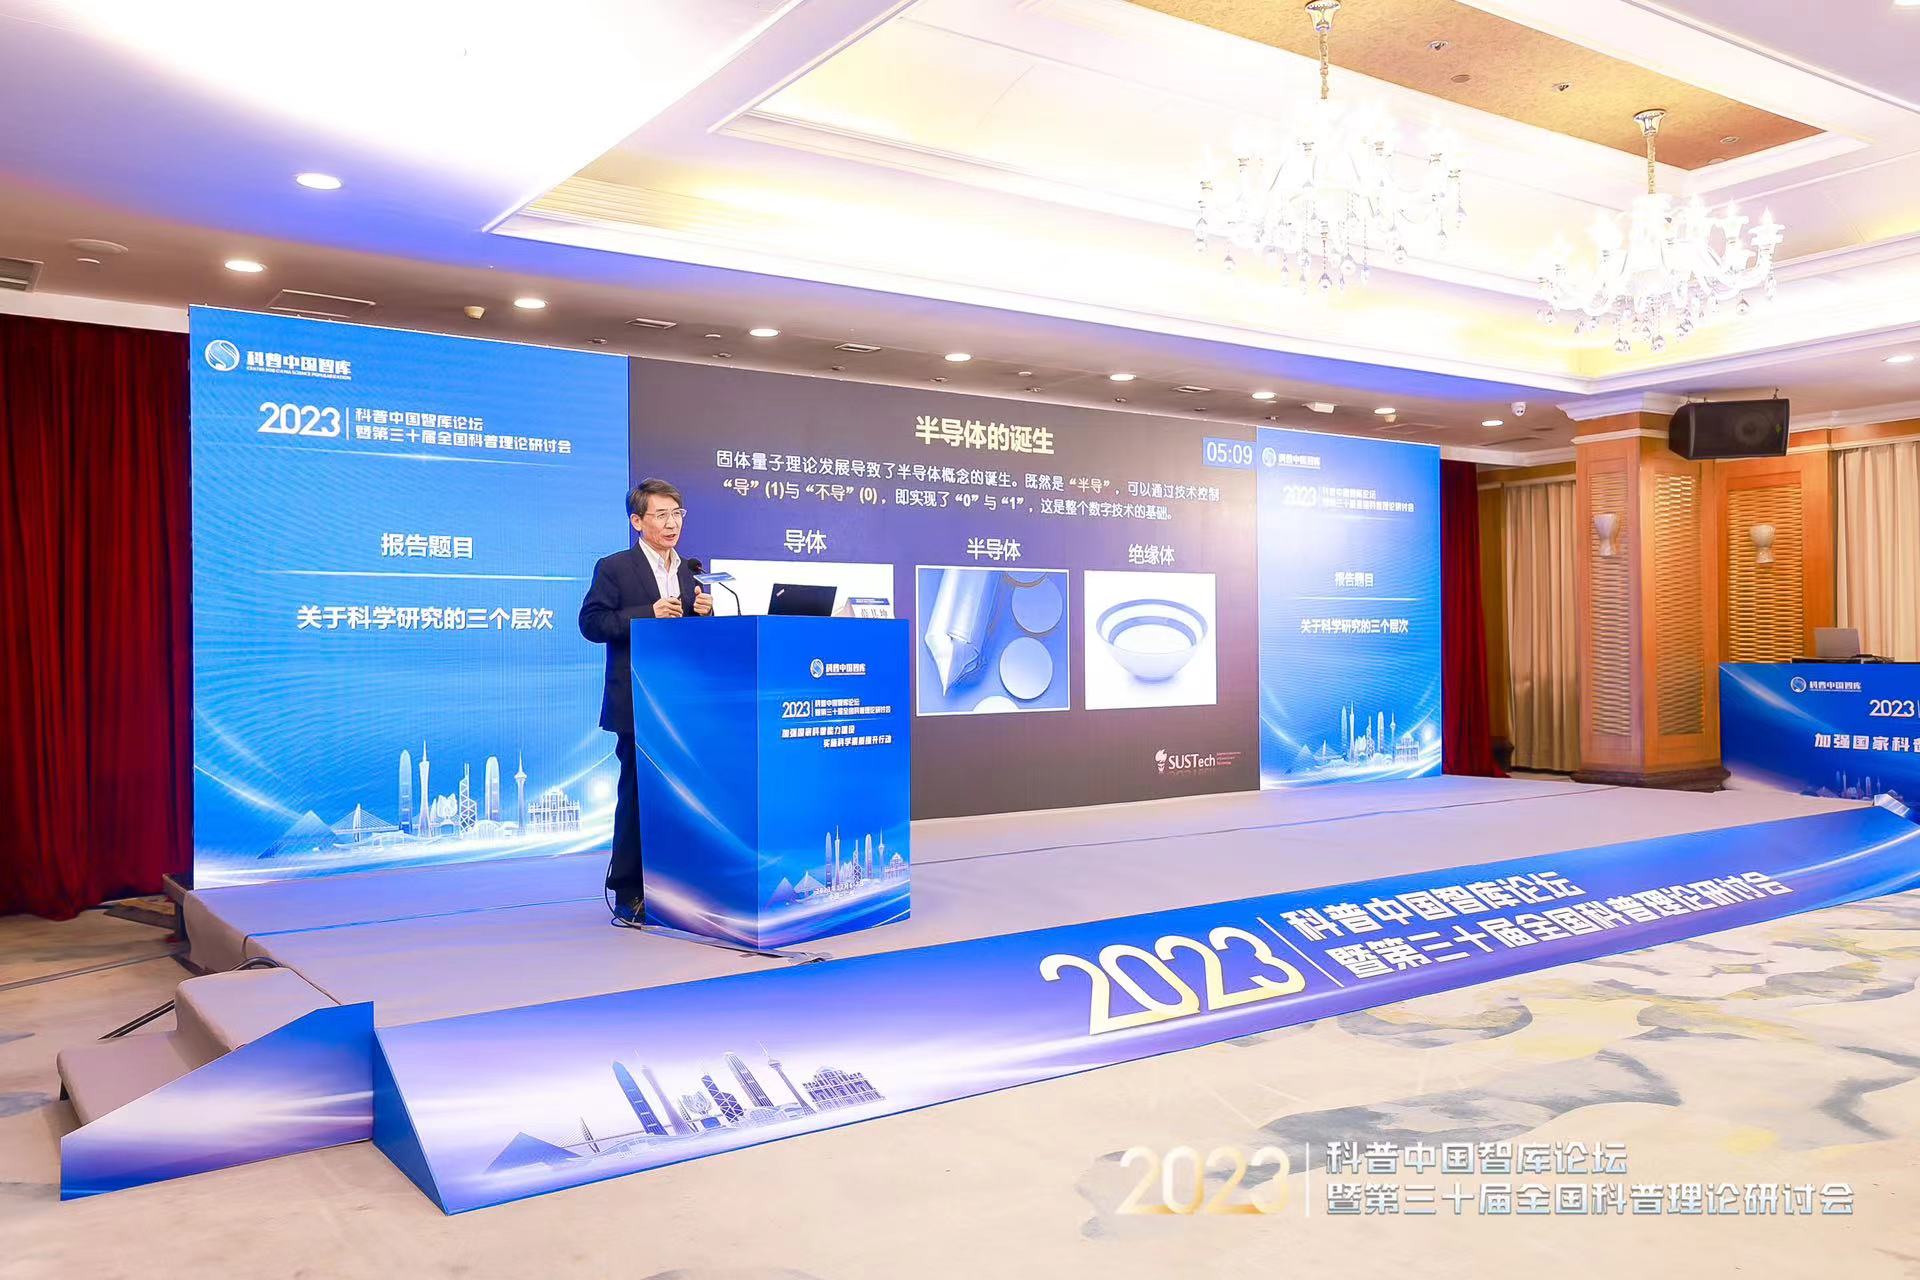 2023年科普中國智庫論壇暨第三十屆全國科普理論研討會在廣州舉辦